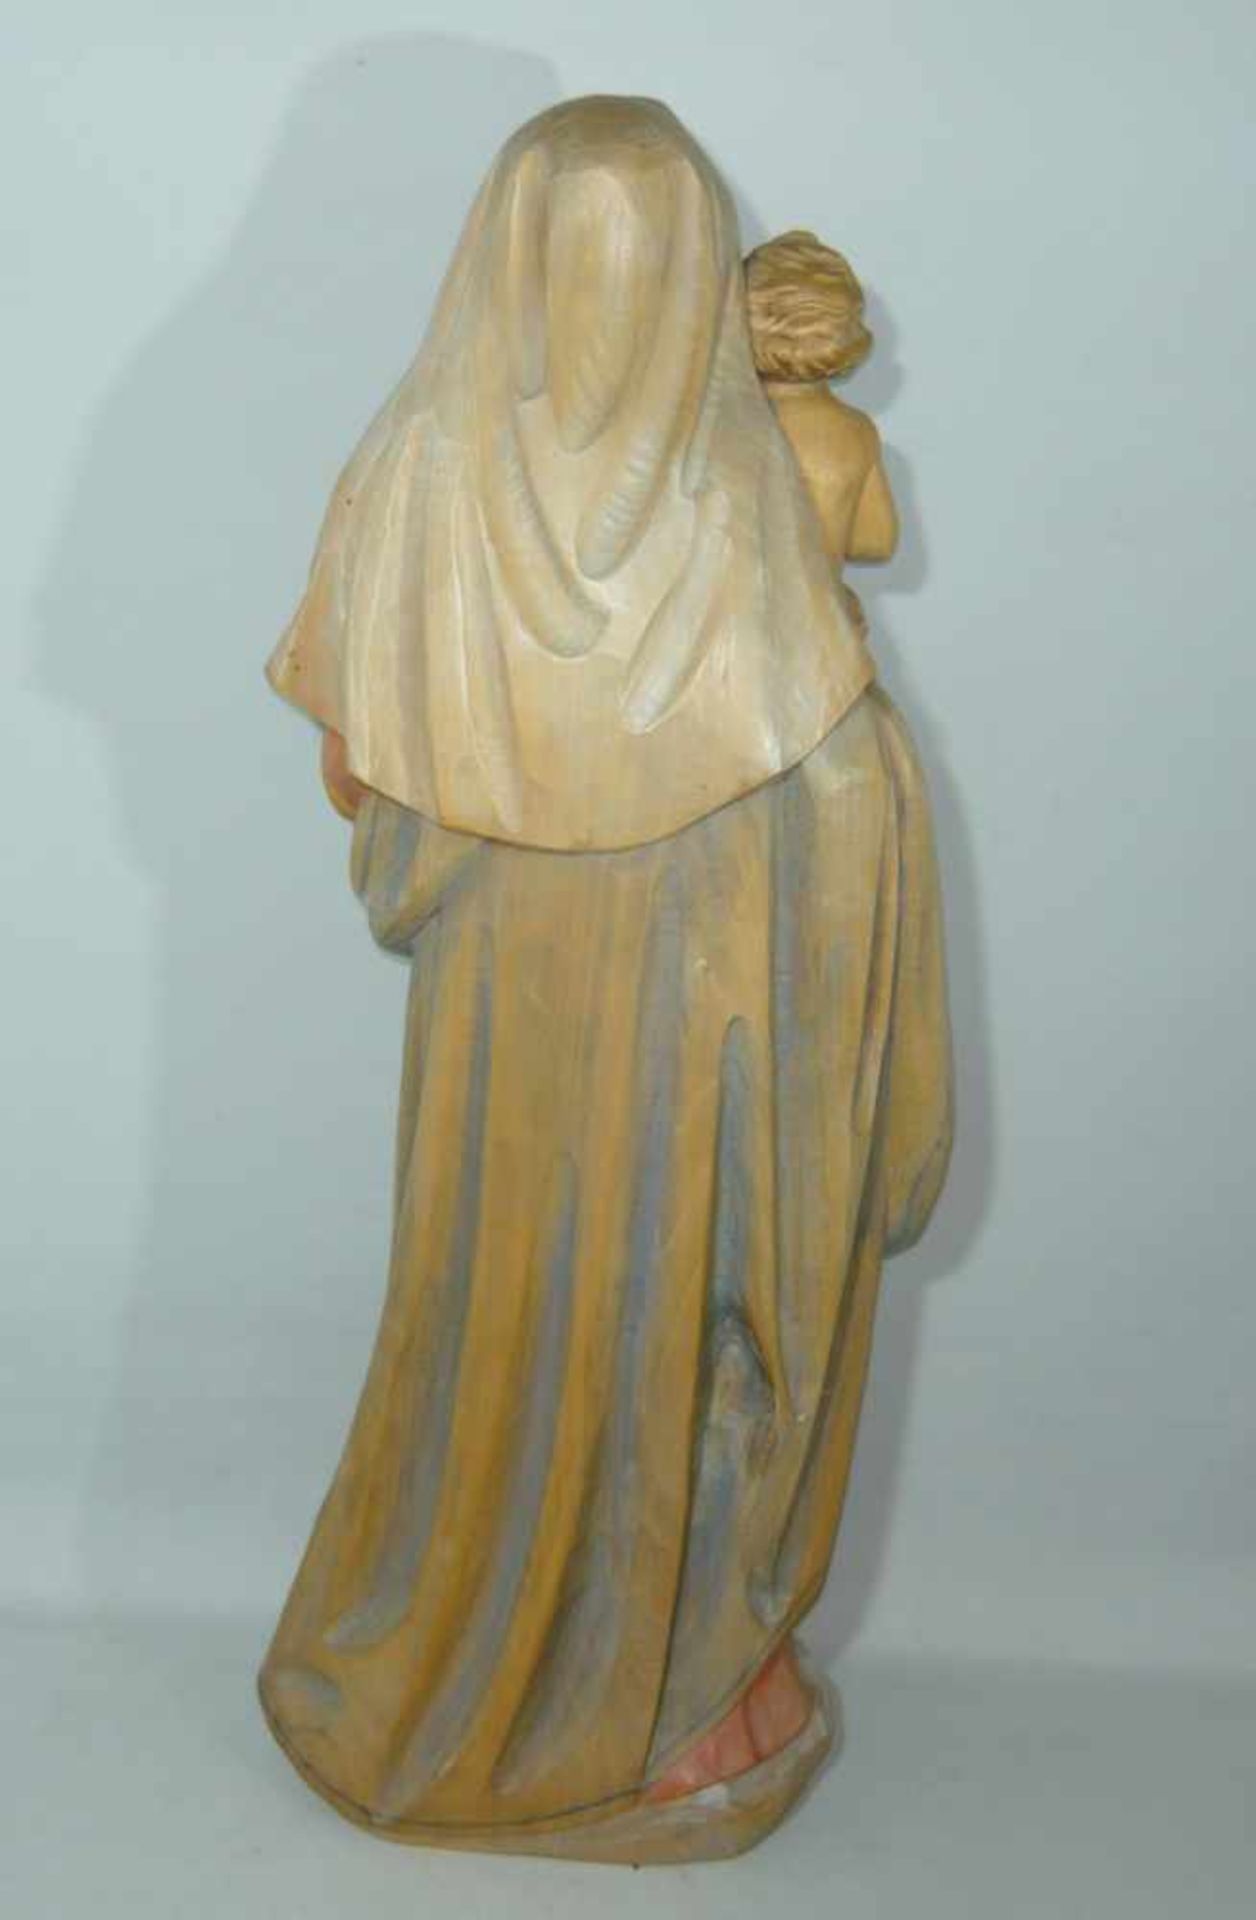 Große Holzschnitzerei. Darstellung der Maria mit Jesuskind. Holz, farbig in zarten Tönen gefasst. - Bild 2 aus 2